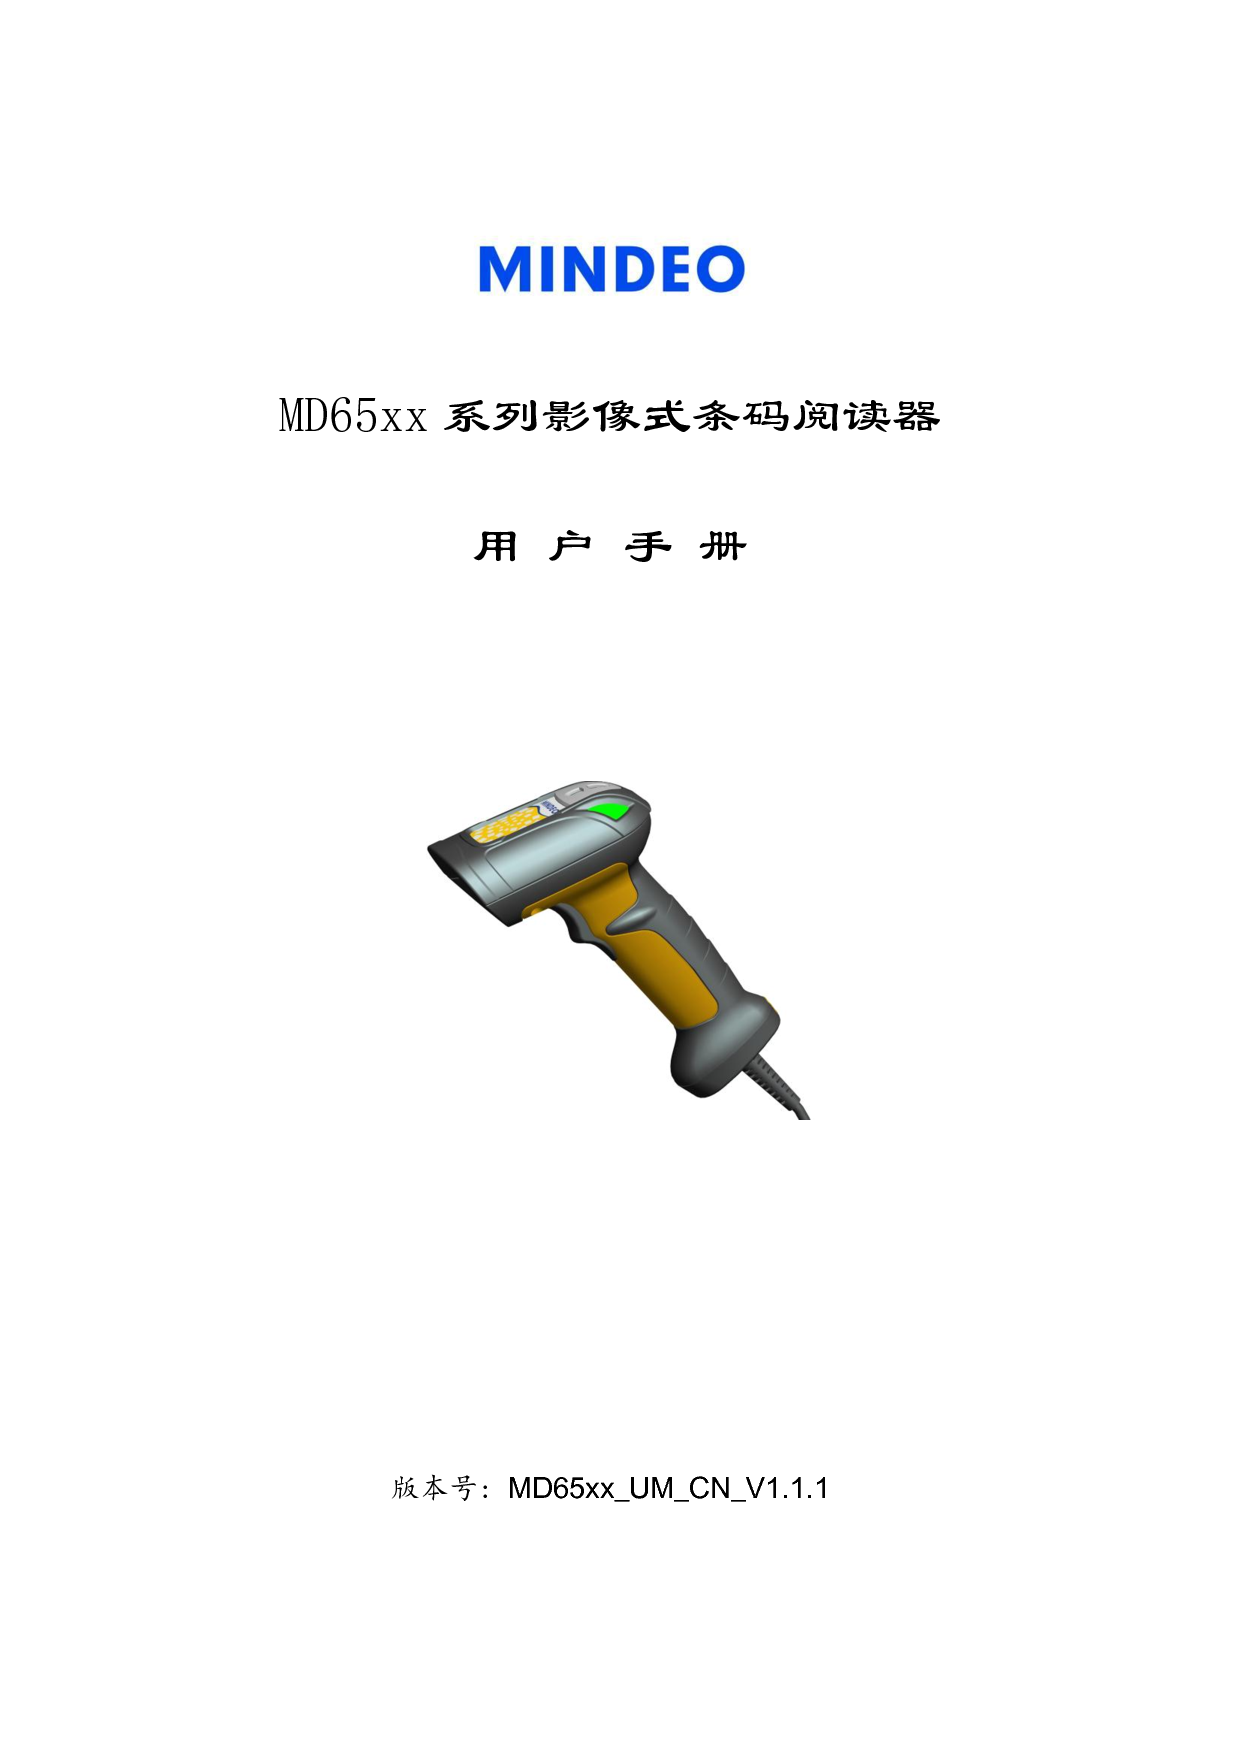 民德 Mindeo MD6500 用户手册 封面